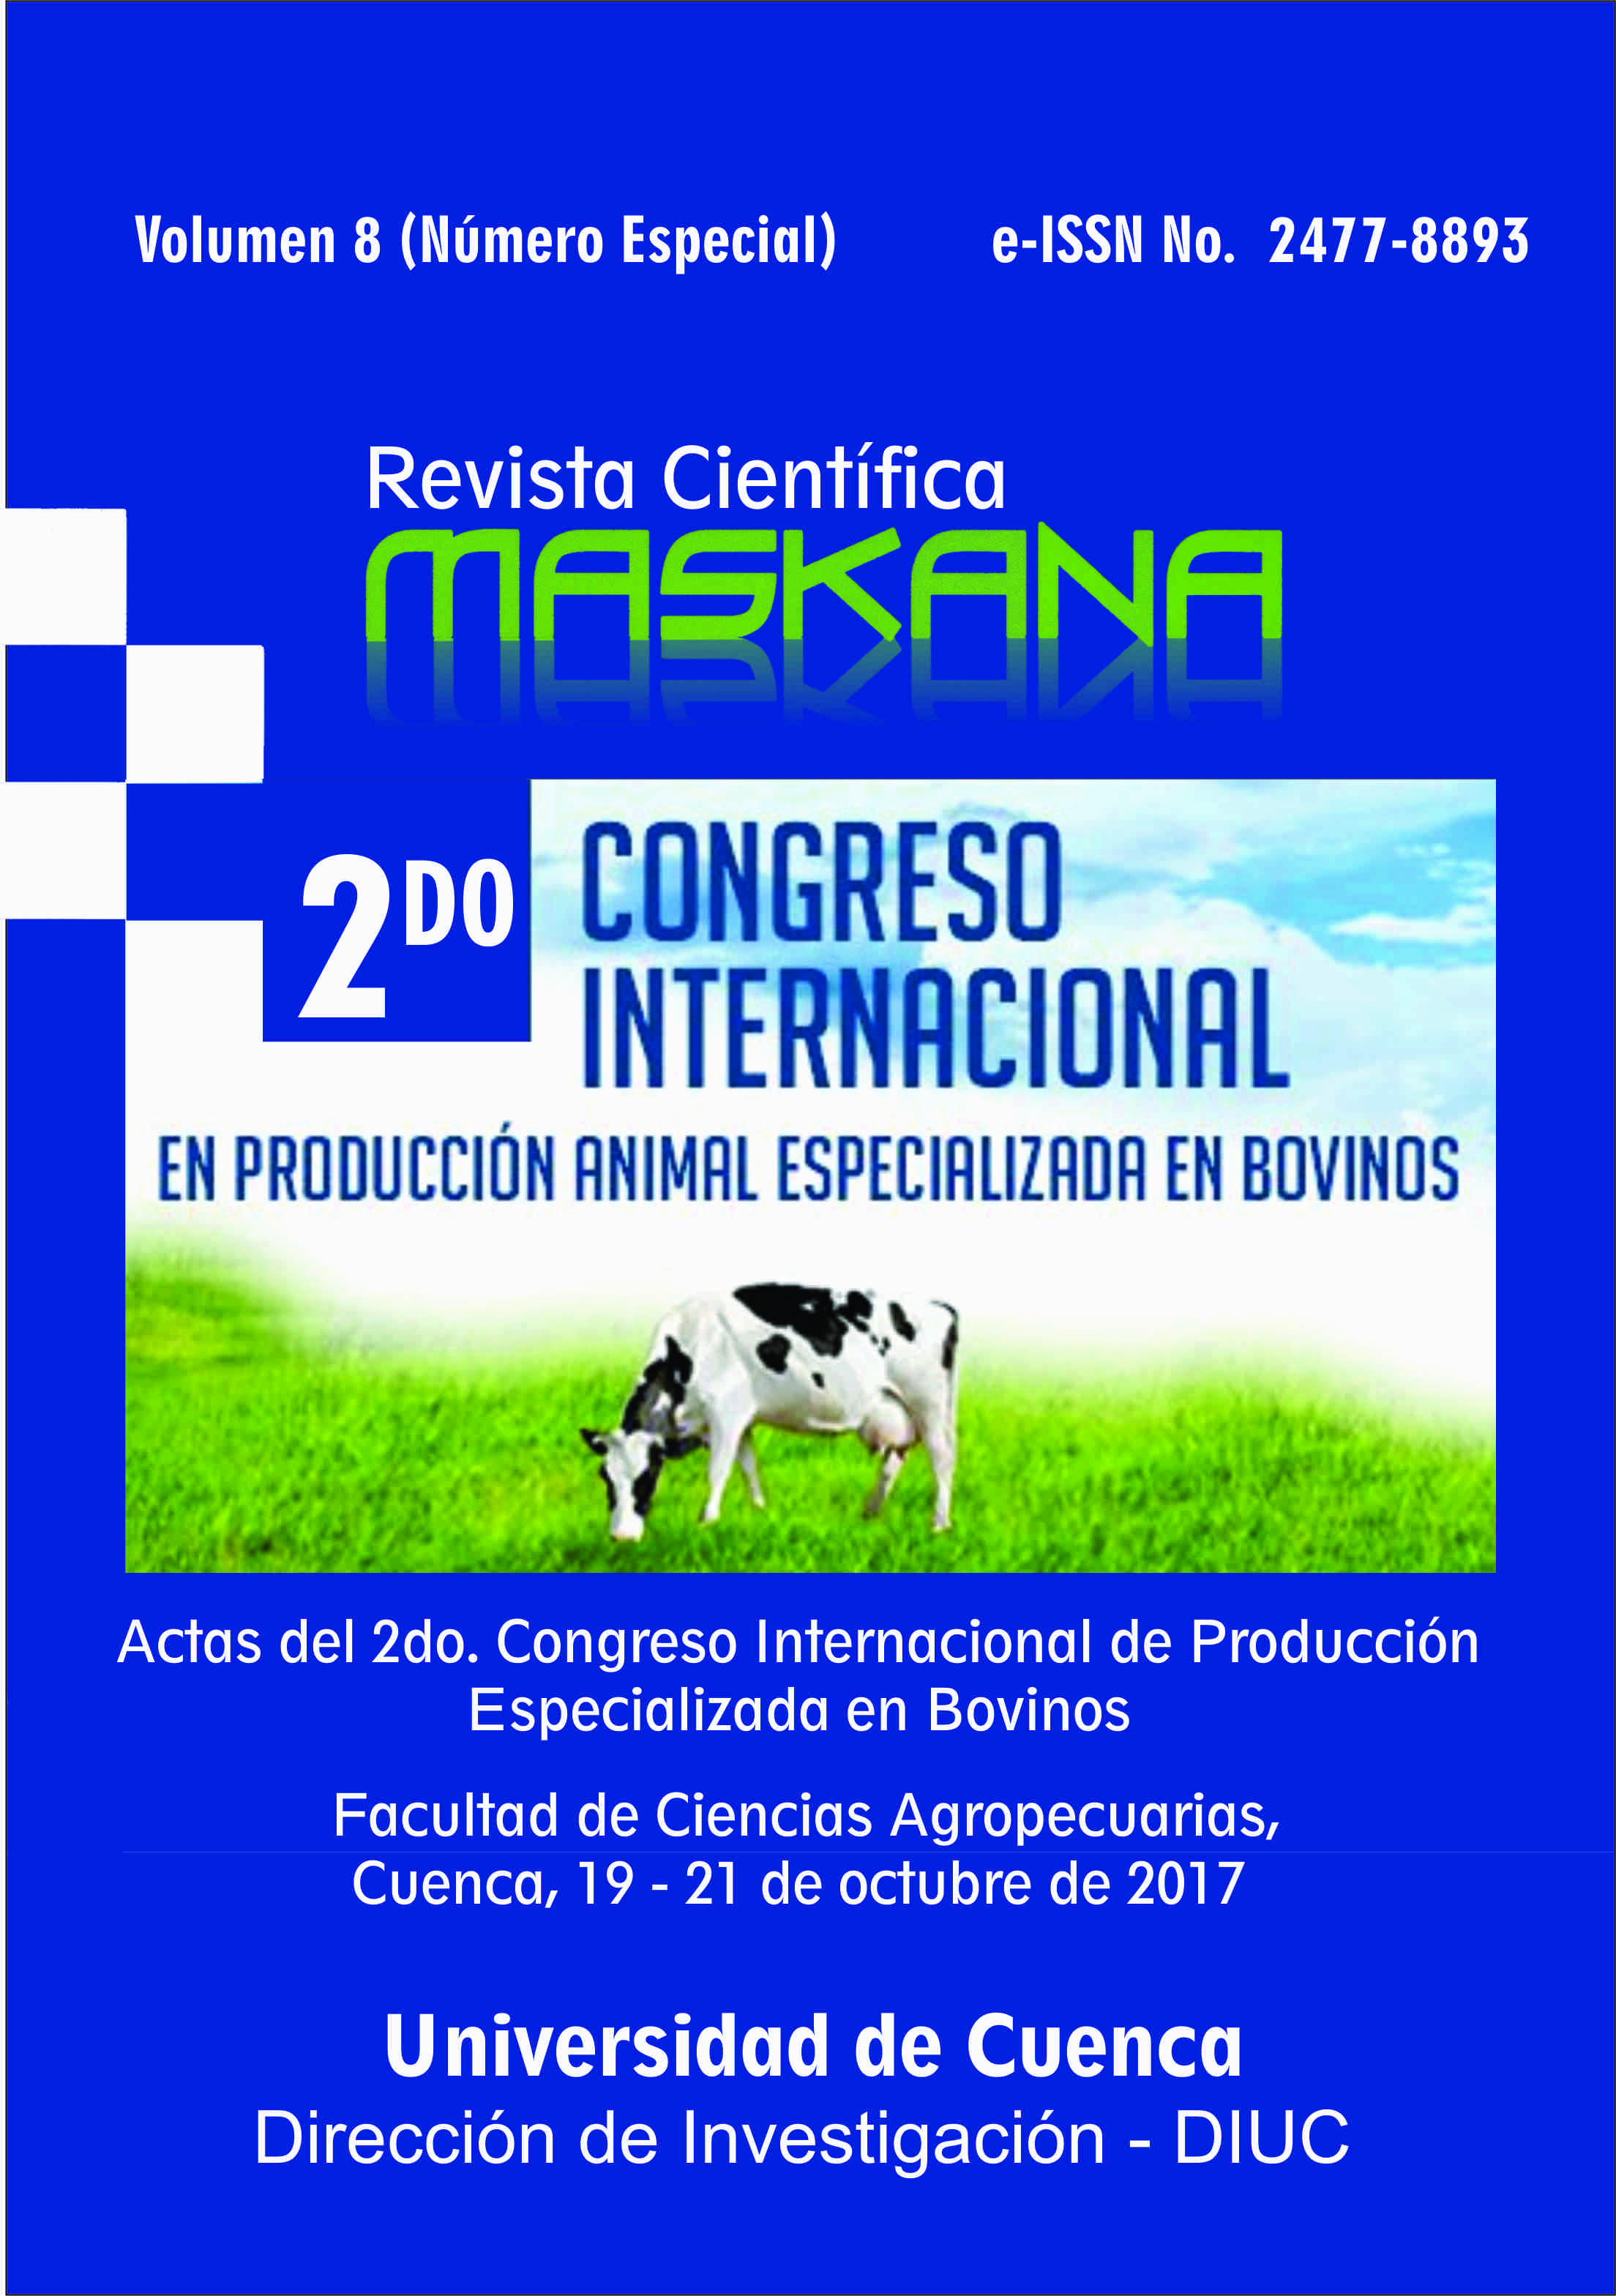 					Ver Vol. 8 (2017): Actas del II Congreso Internacional de Producción Animal Especializada en Bovinos
				